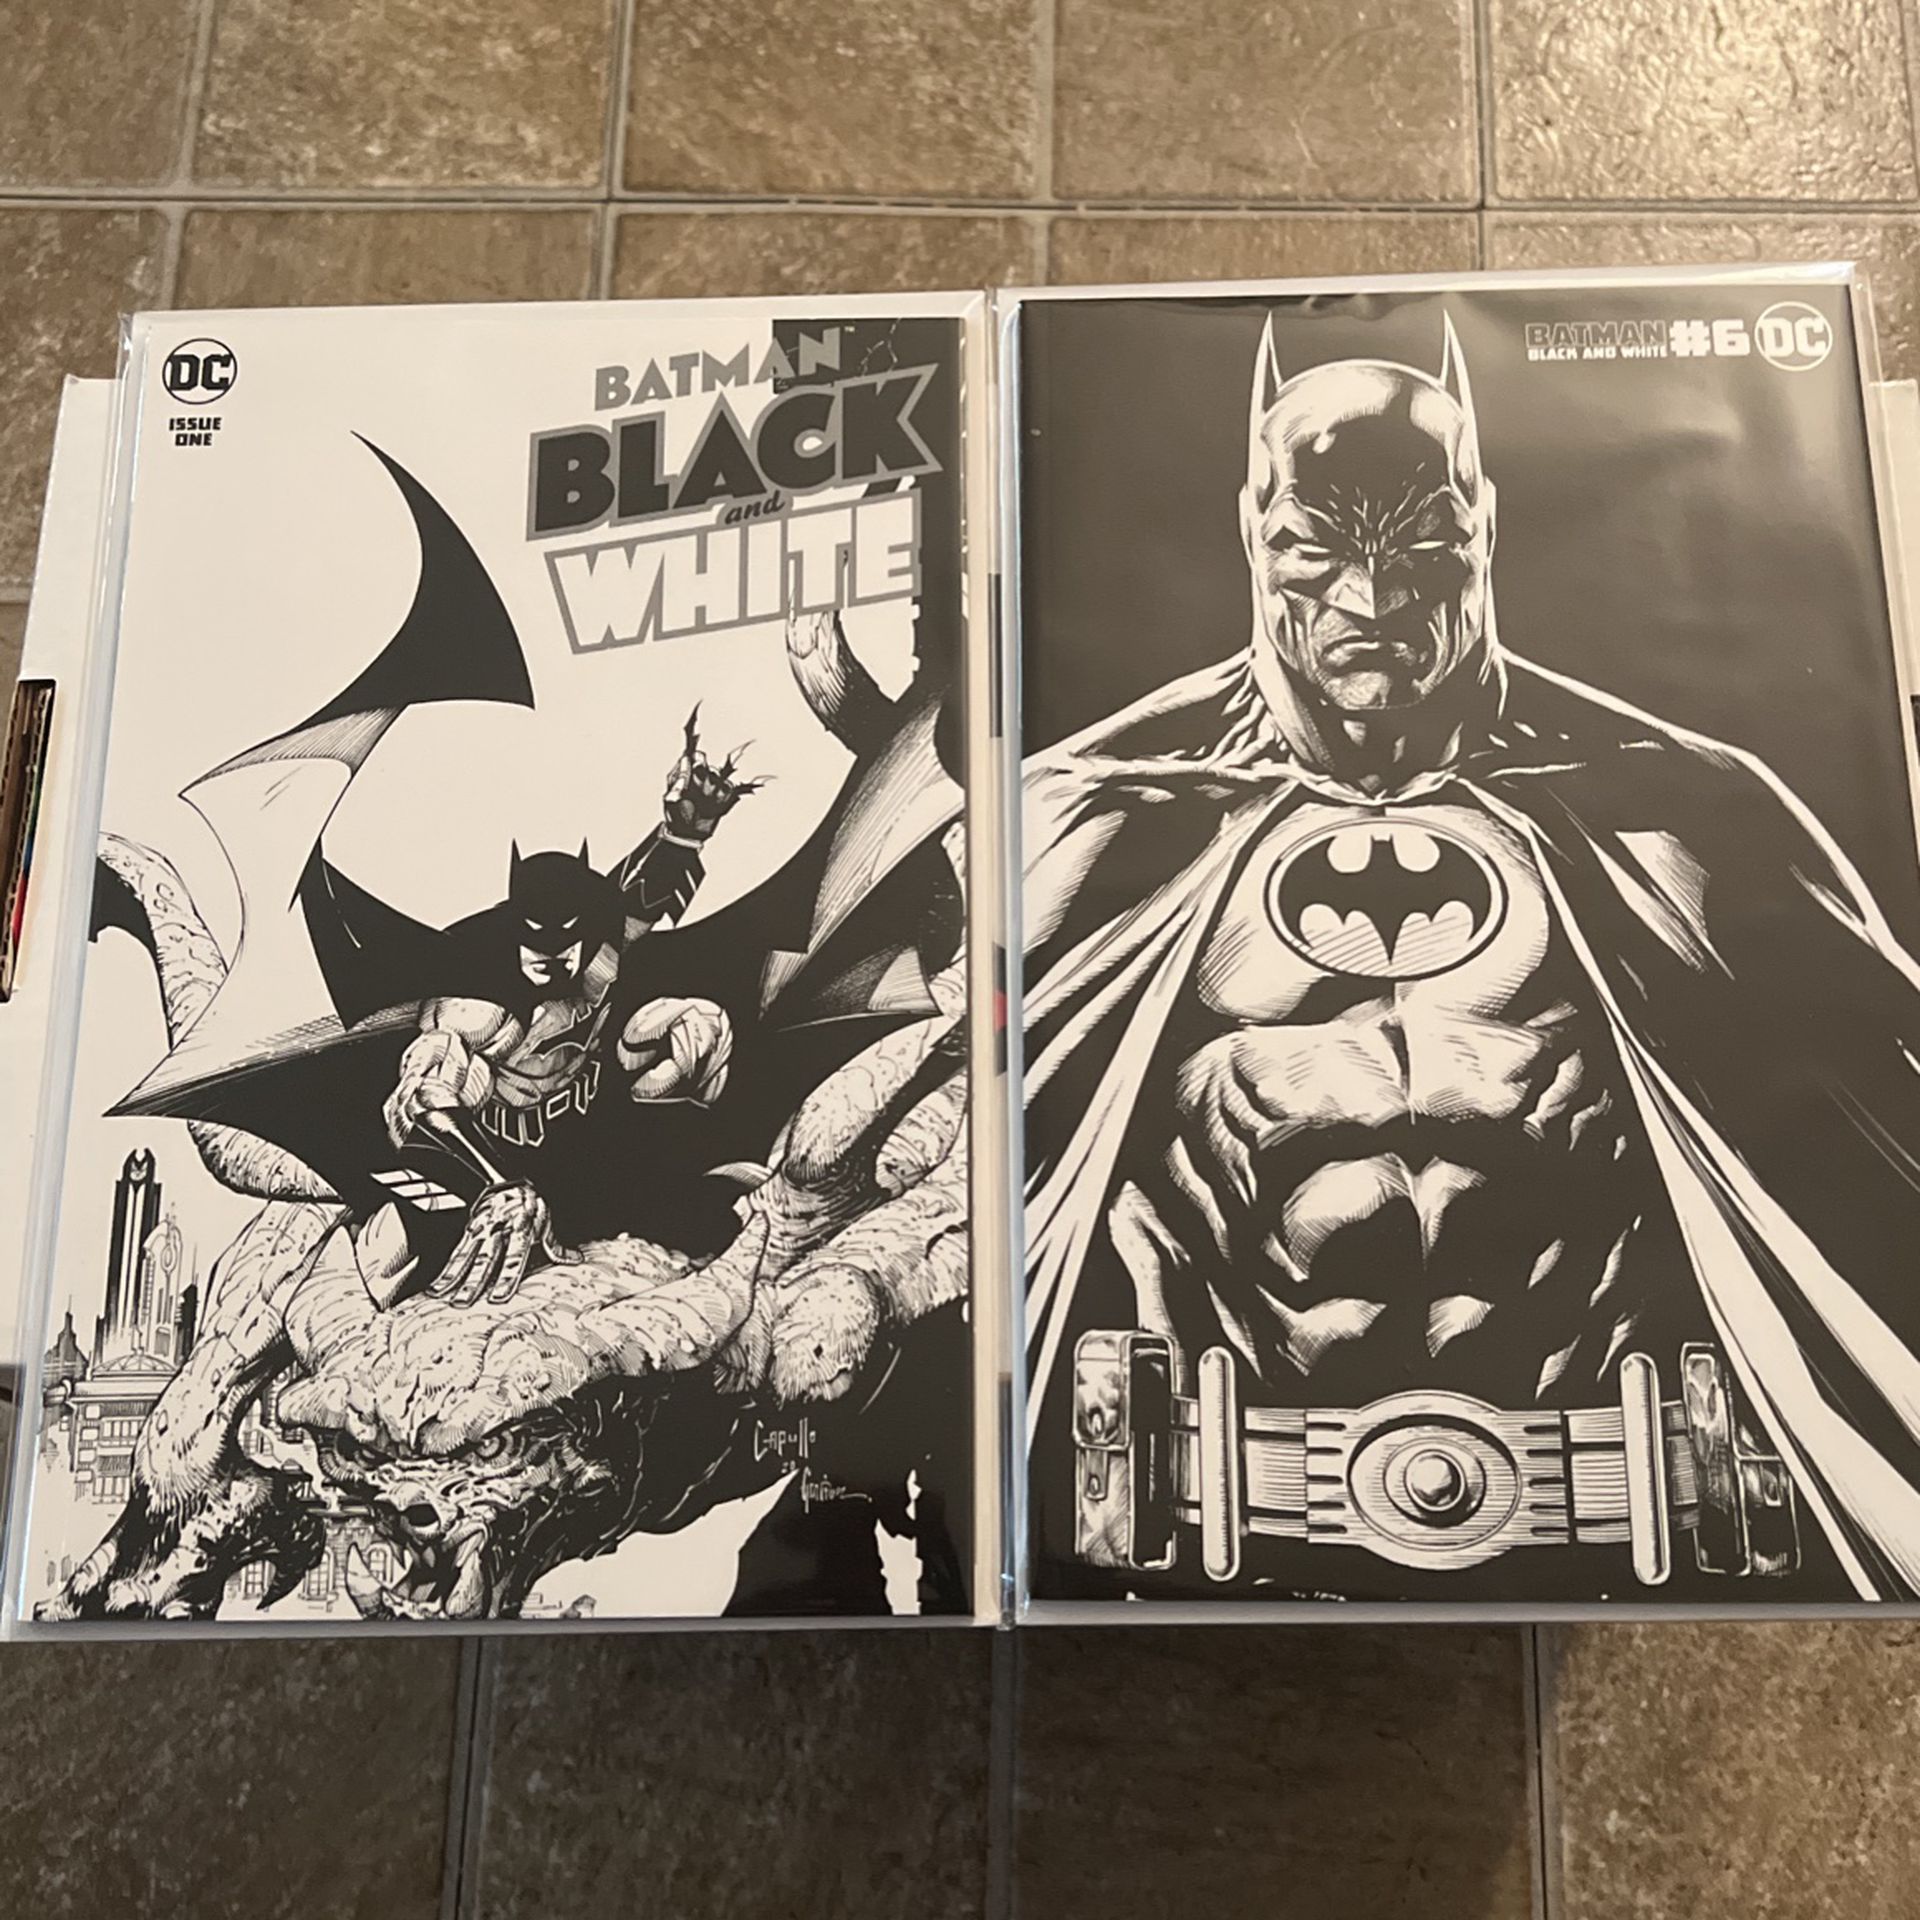 Batman Black-And-White1 / Batman Black-And-White6